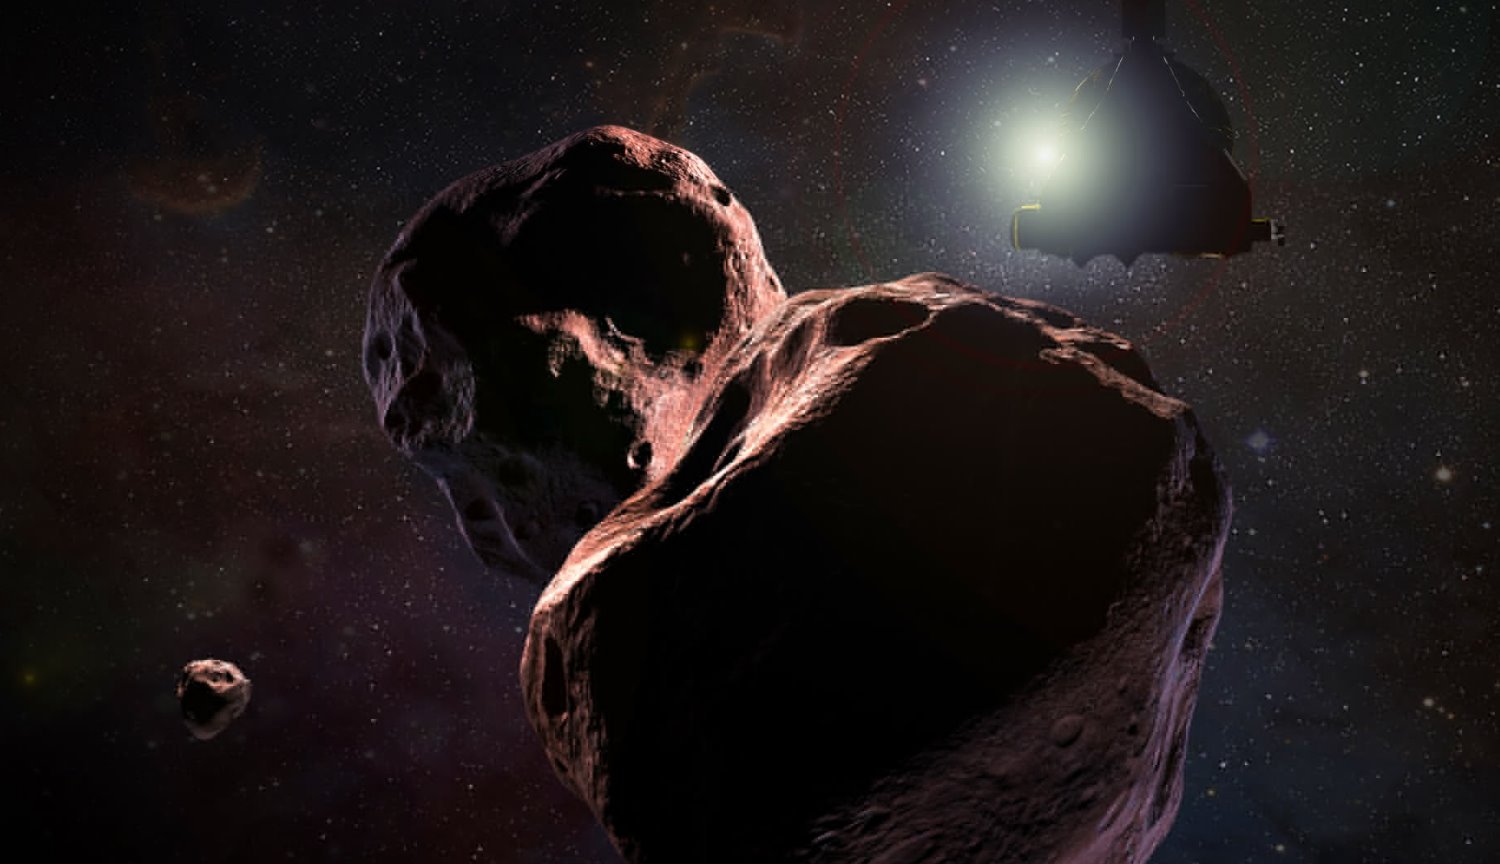 Il nuovo enigma per gli scienziati: perché l'asteroide Ultima Thule ha affusolato il modulo?